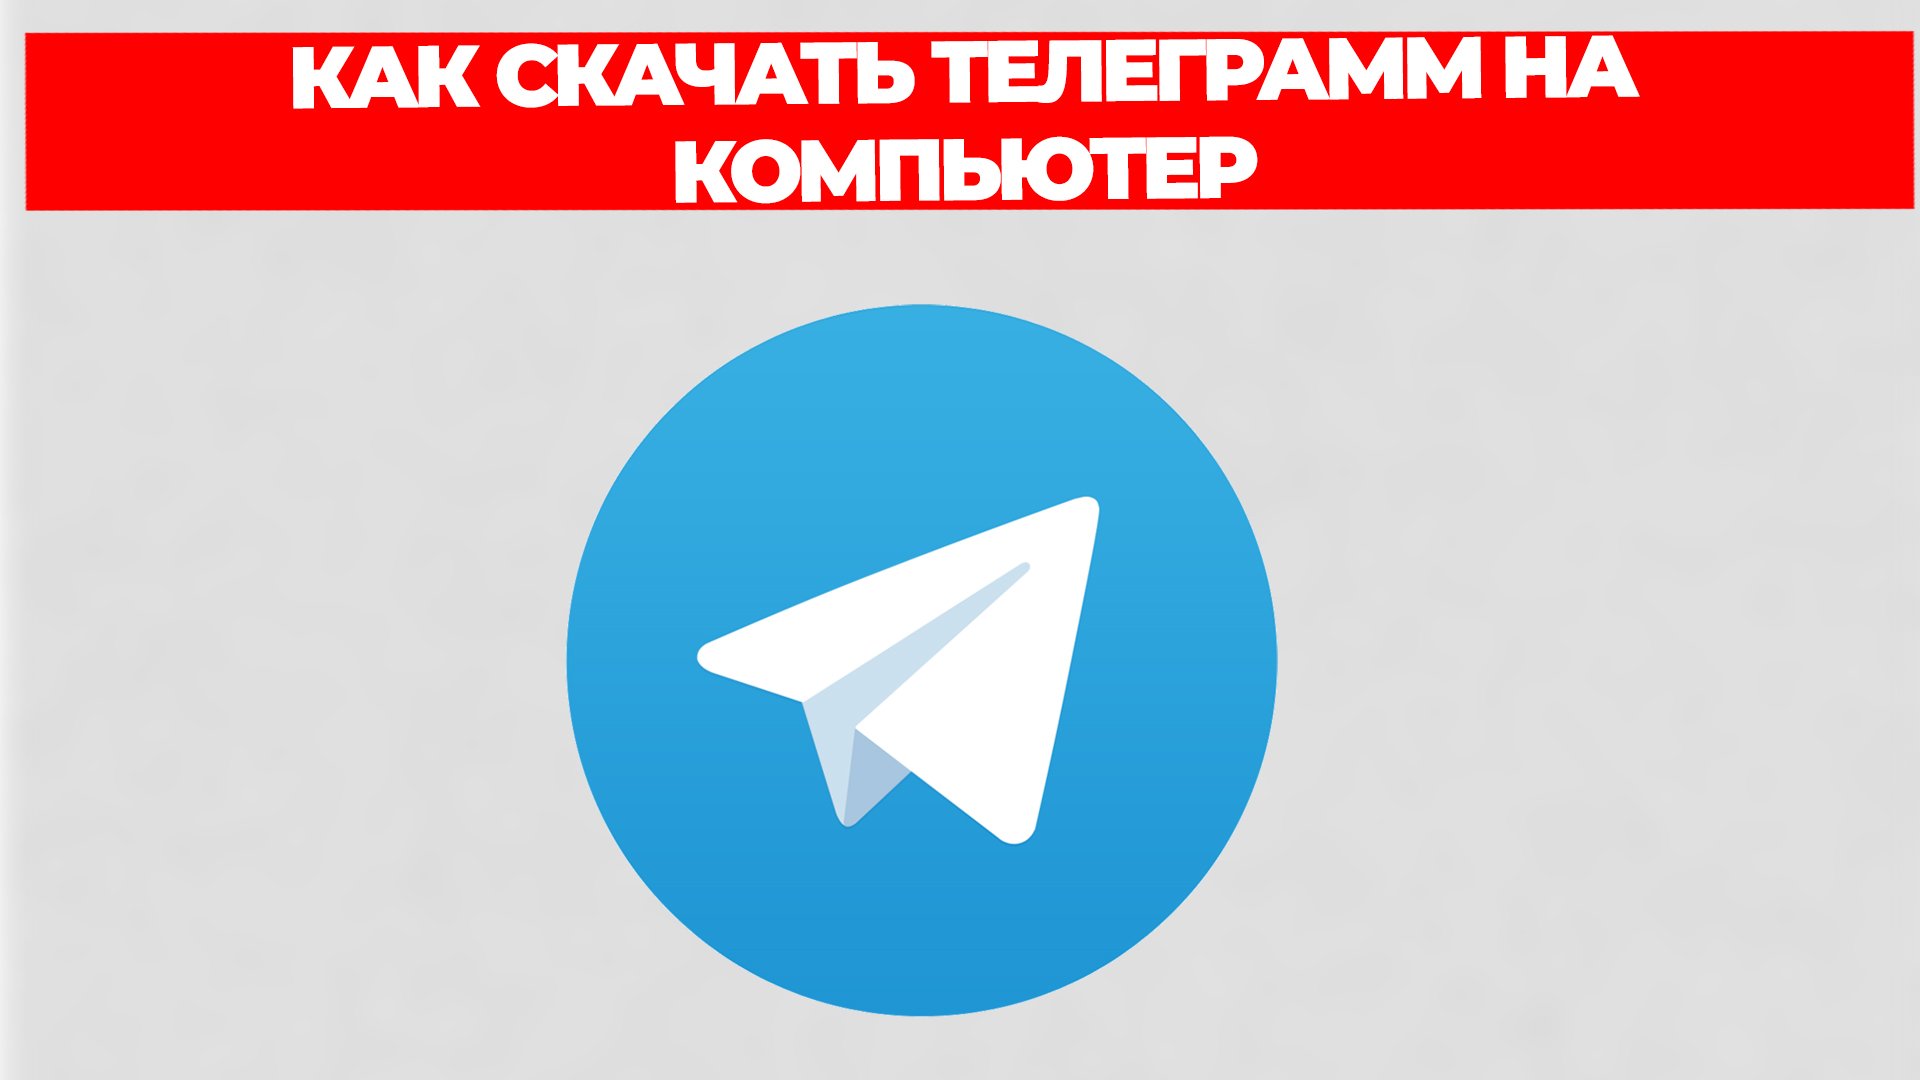 Скачать телеграмм 32 на компьютер бесплатно на русском языке фото 37